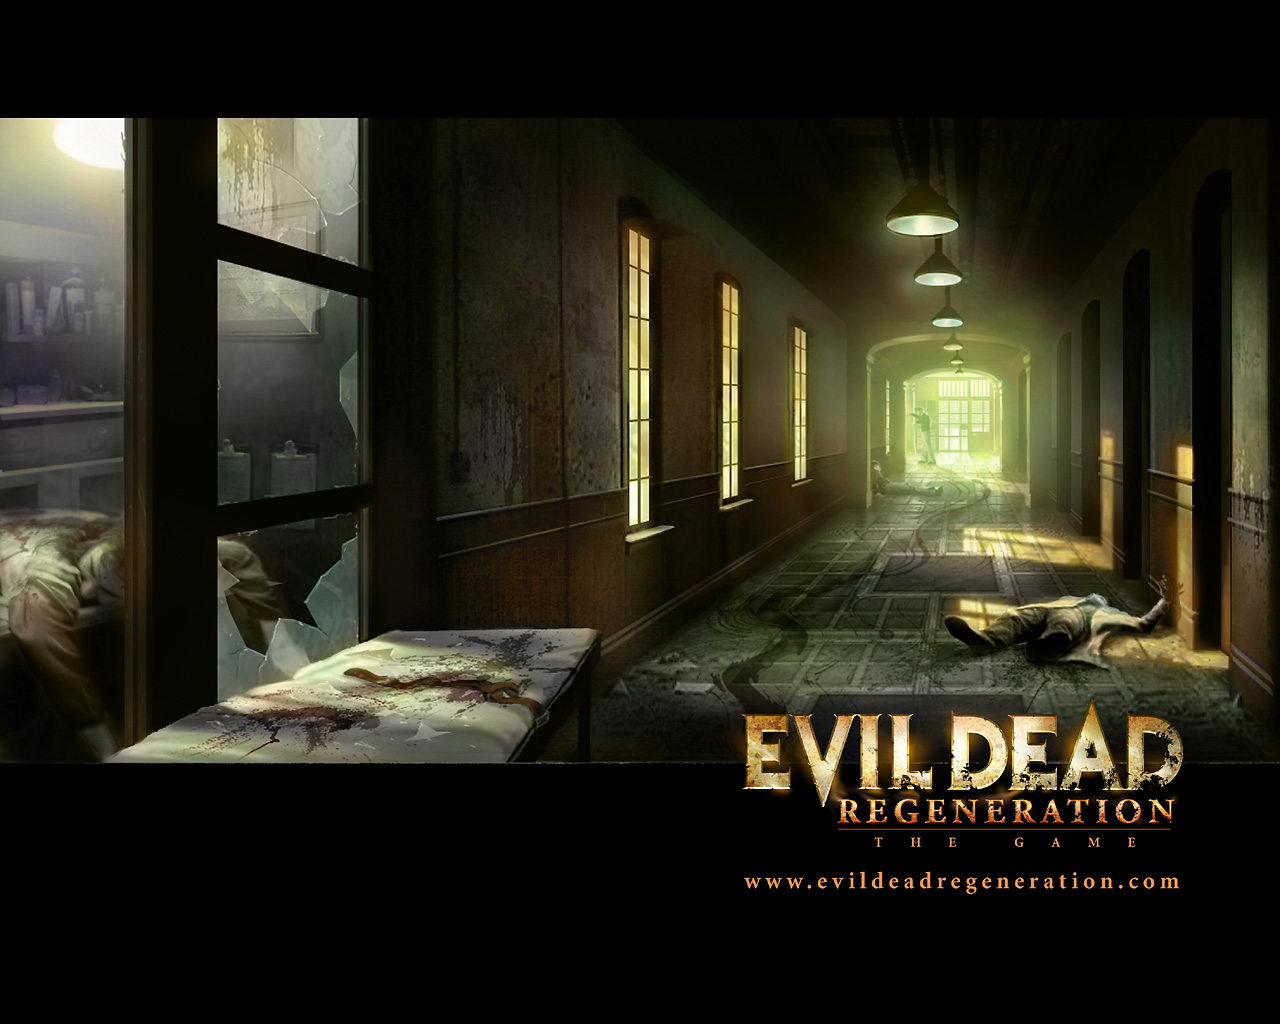 Evil Dead wallpapers for desktop, download free Evil Dead pictures